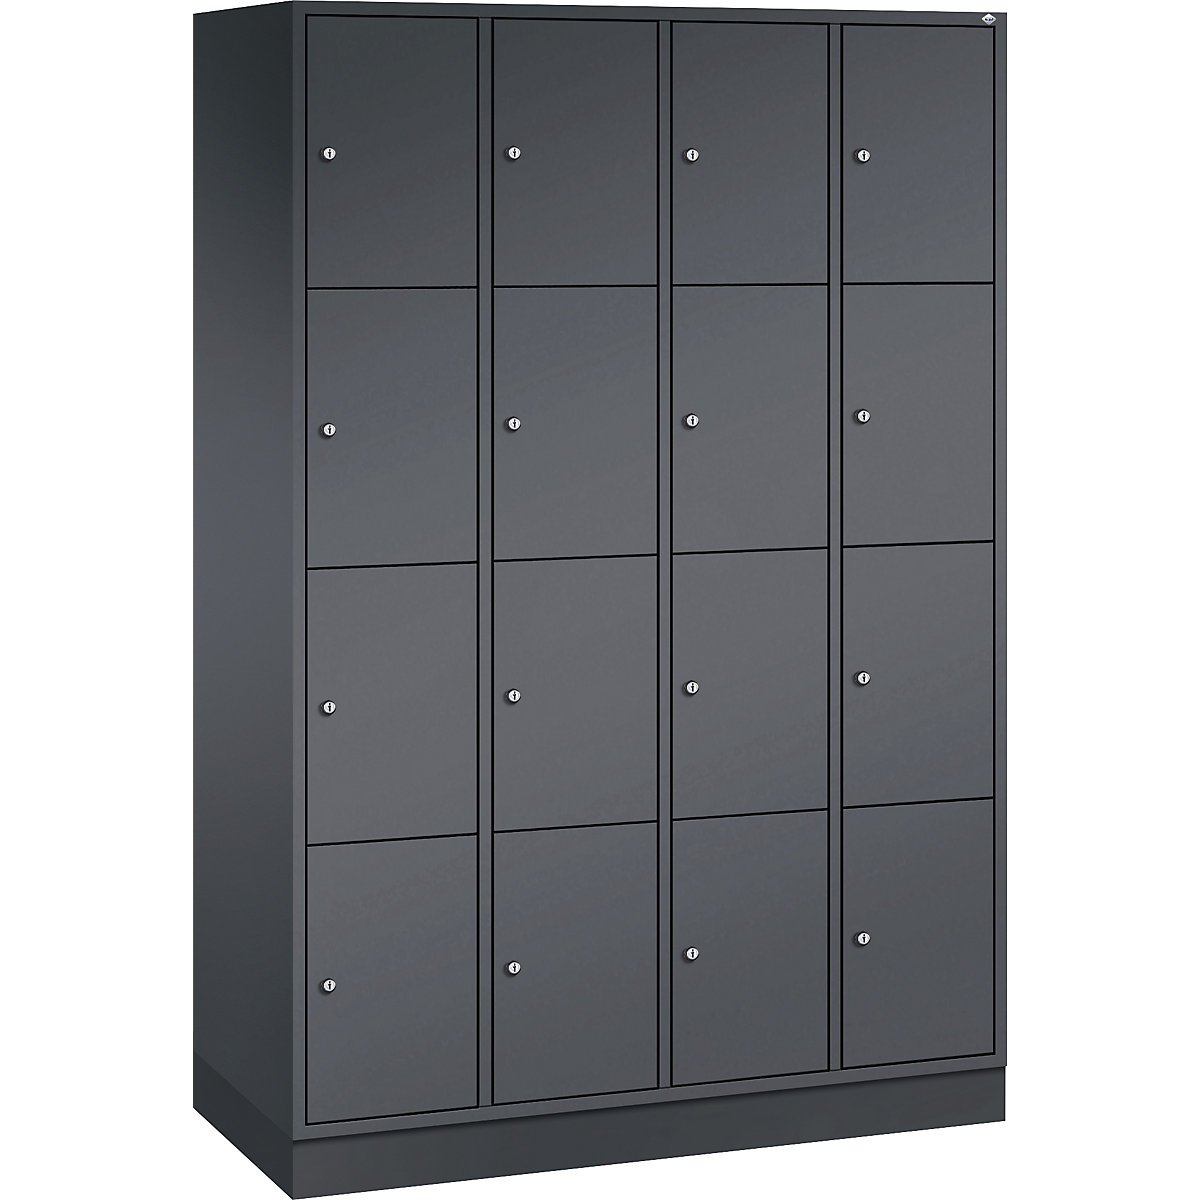 Vestiaire multicases en acier INTRO, casiers hauteur 435 mm – C+P, l x p 1220 x 500 mm, 16 casiers, corps gris noir, portes gris noir-5